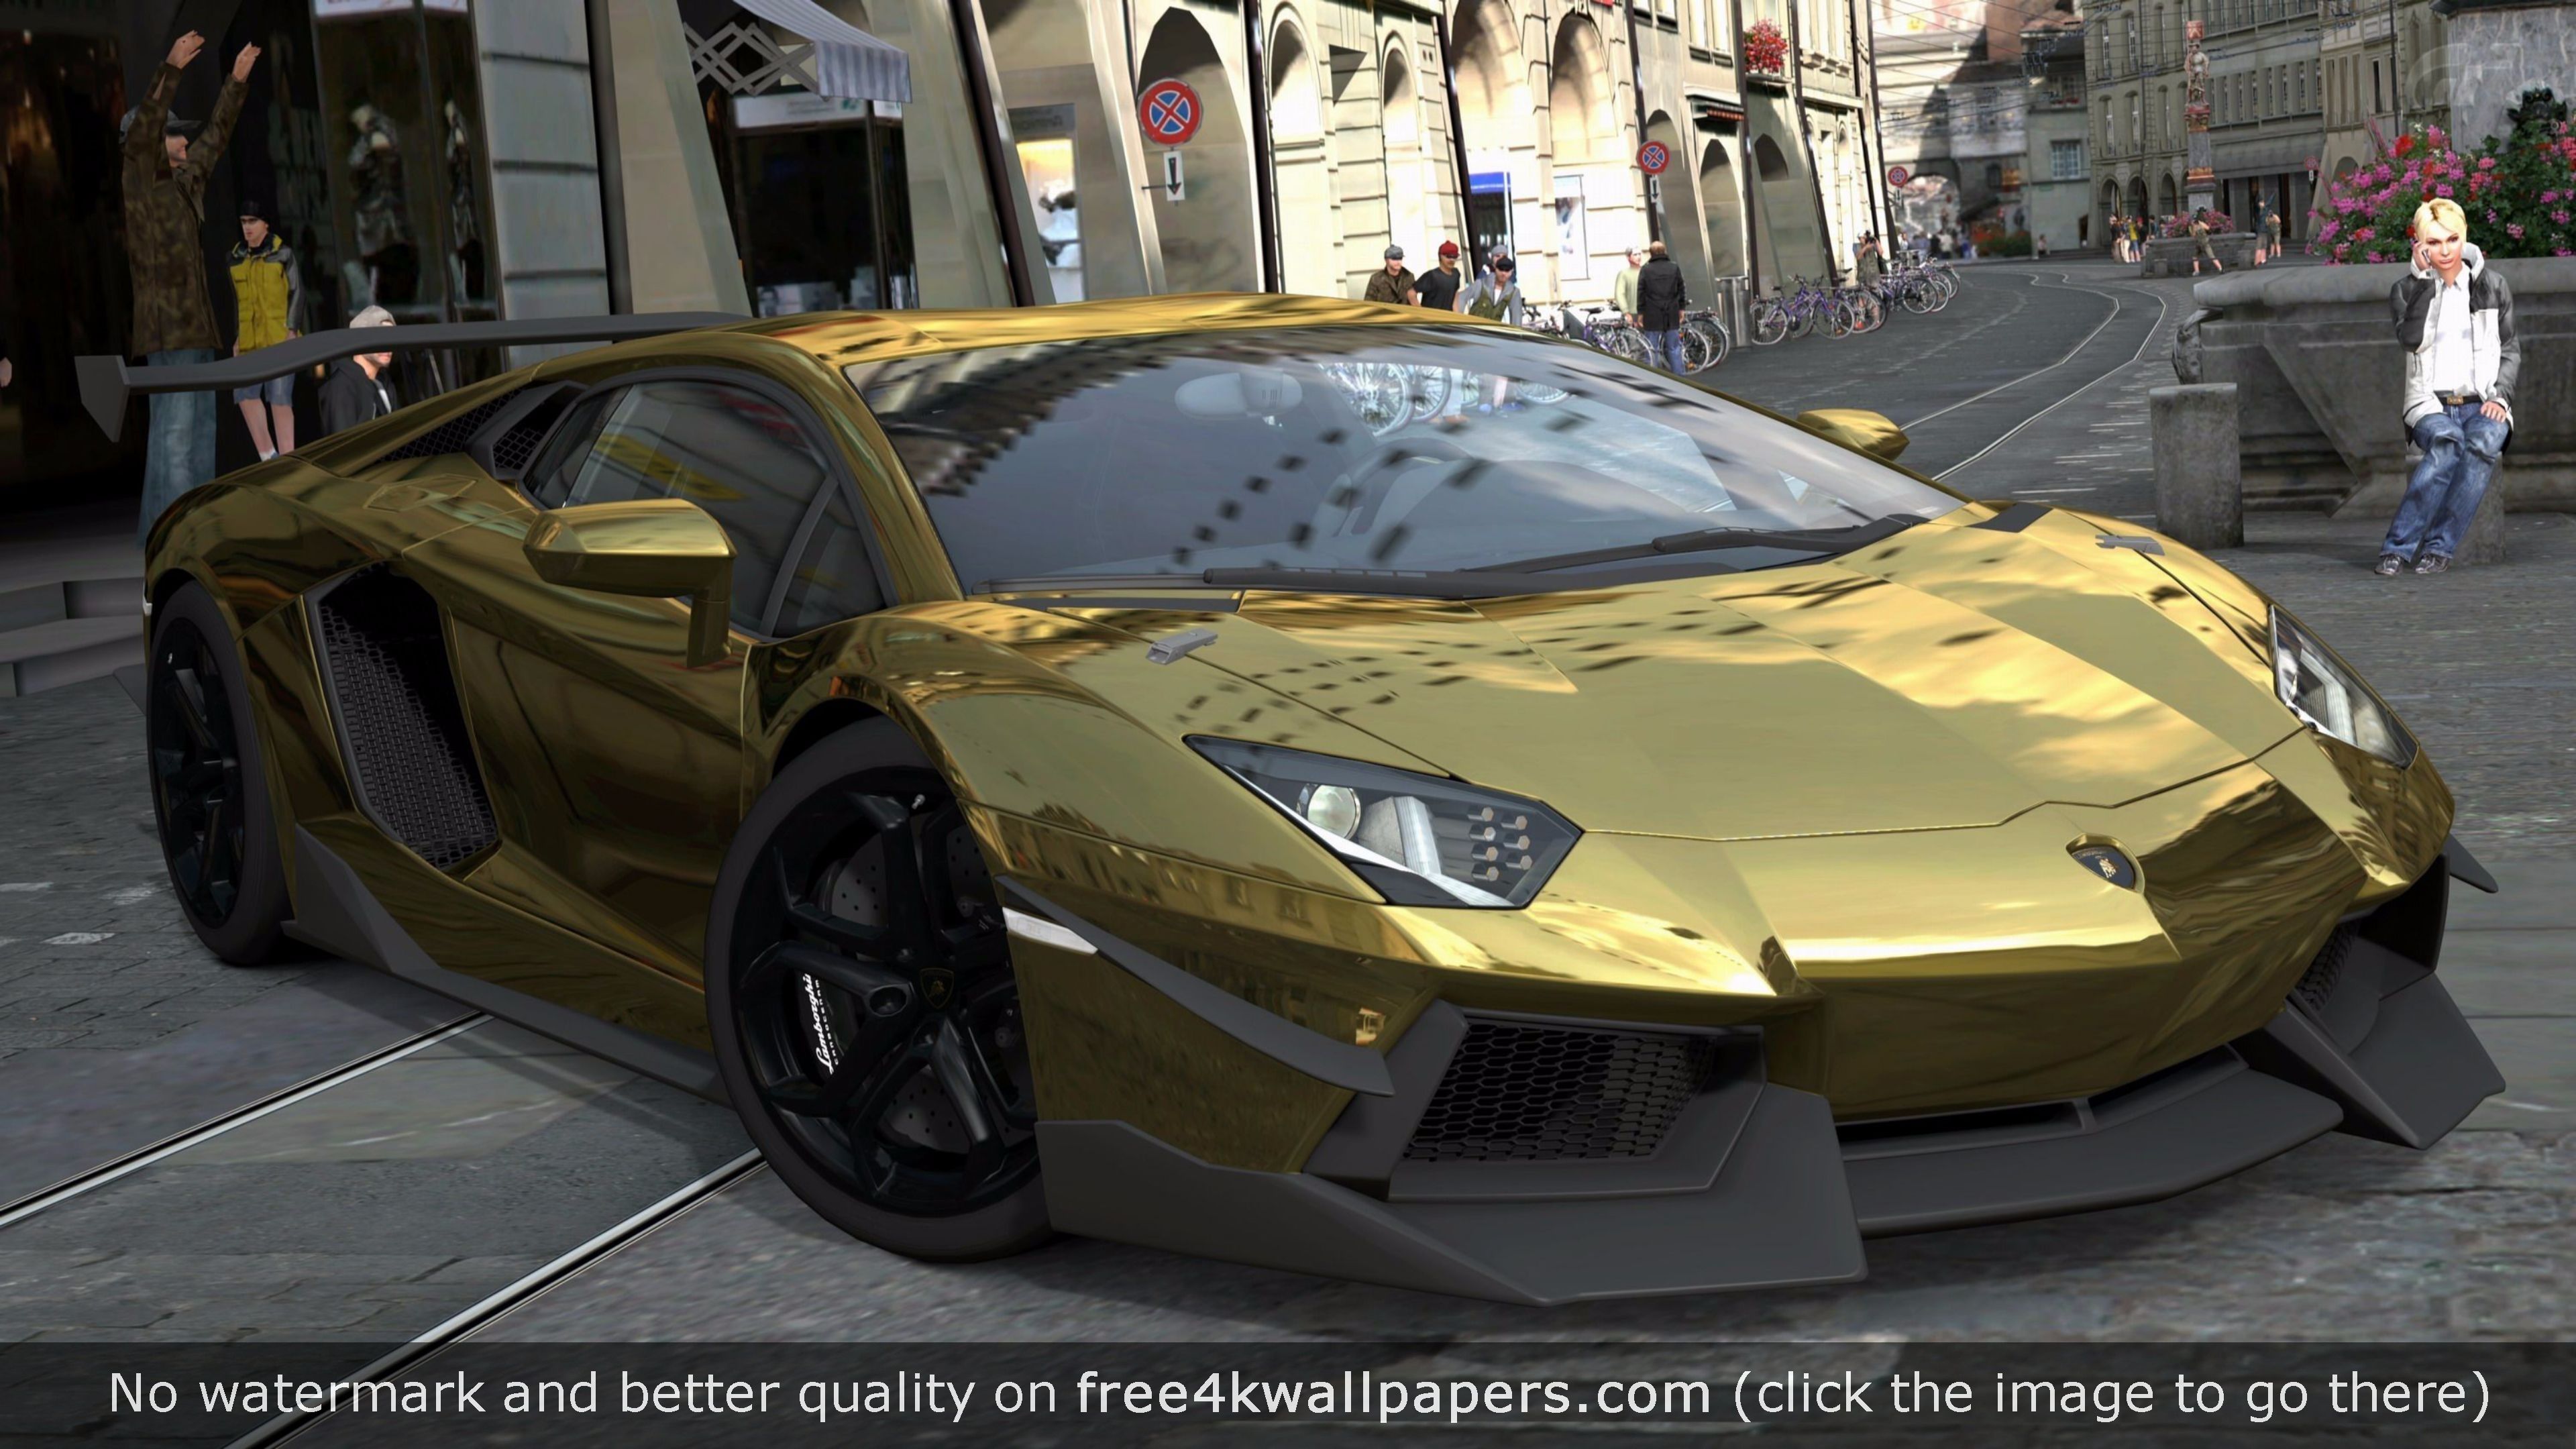 Cool Gold Cars Lamborghini Wallpapers Wallpapers